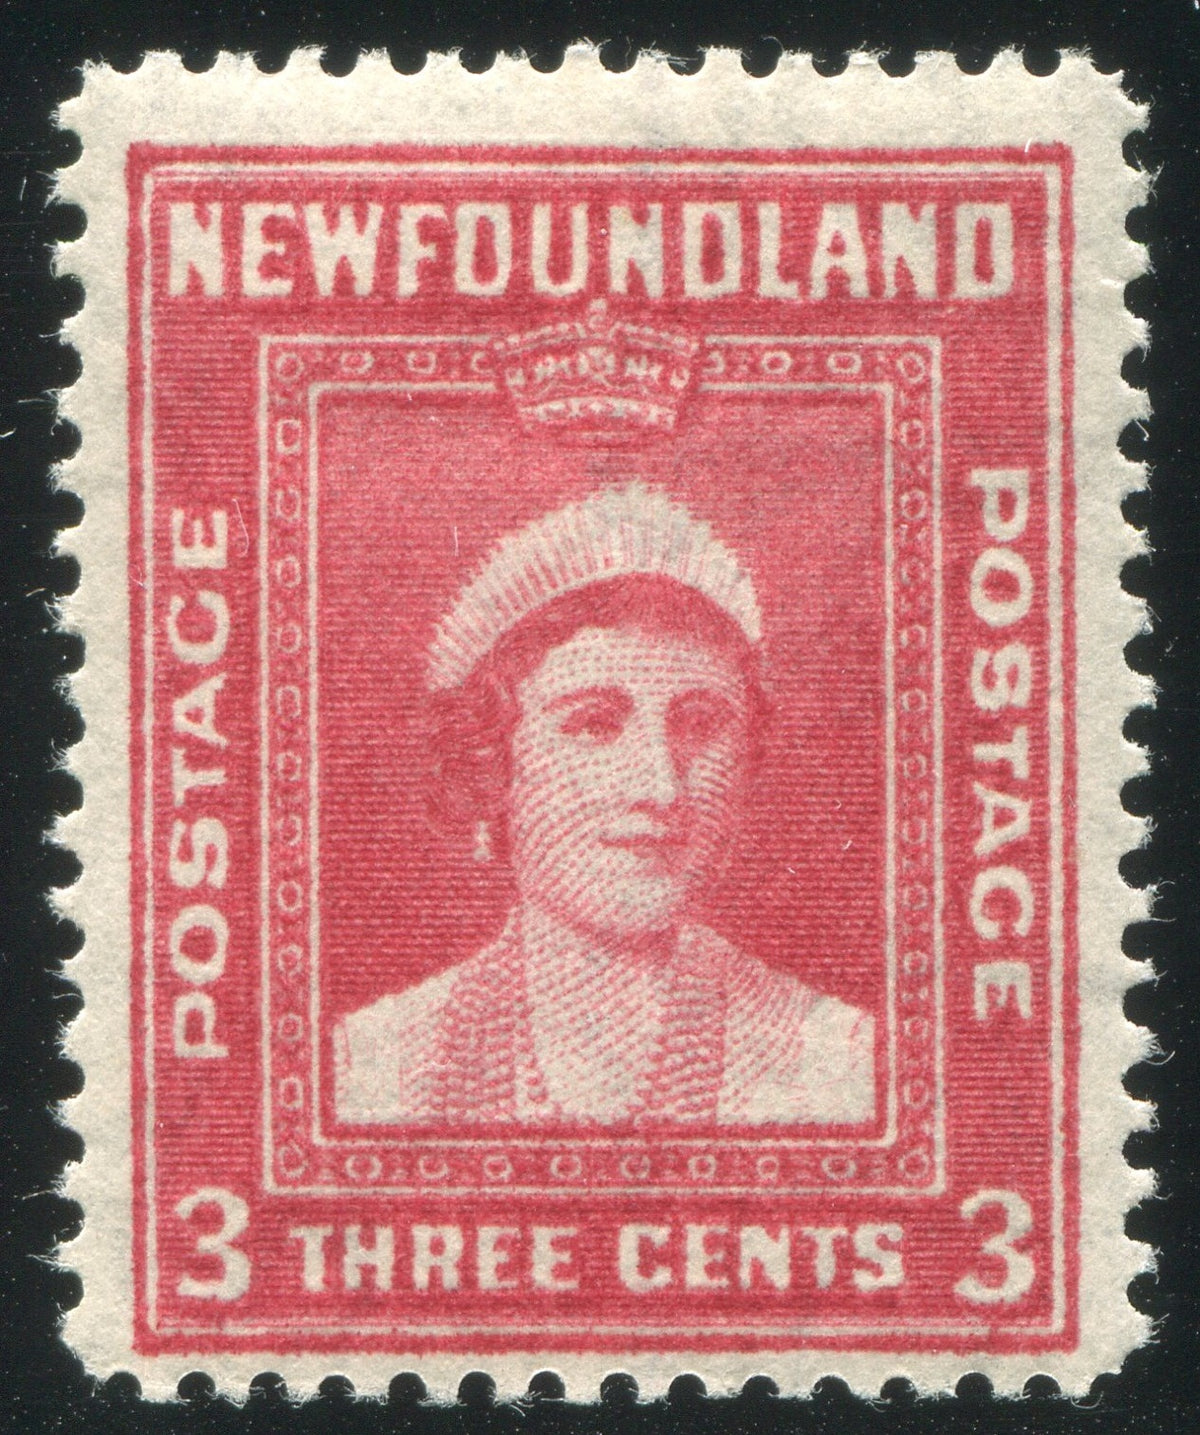 0255NF2002 - Newfoundland #255v - Mint Background Variety